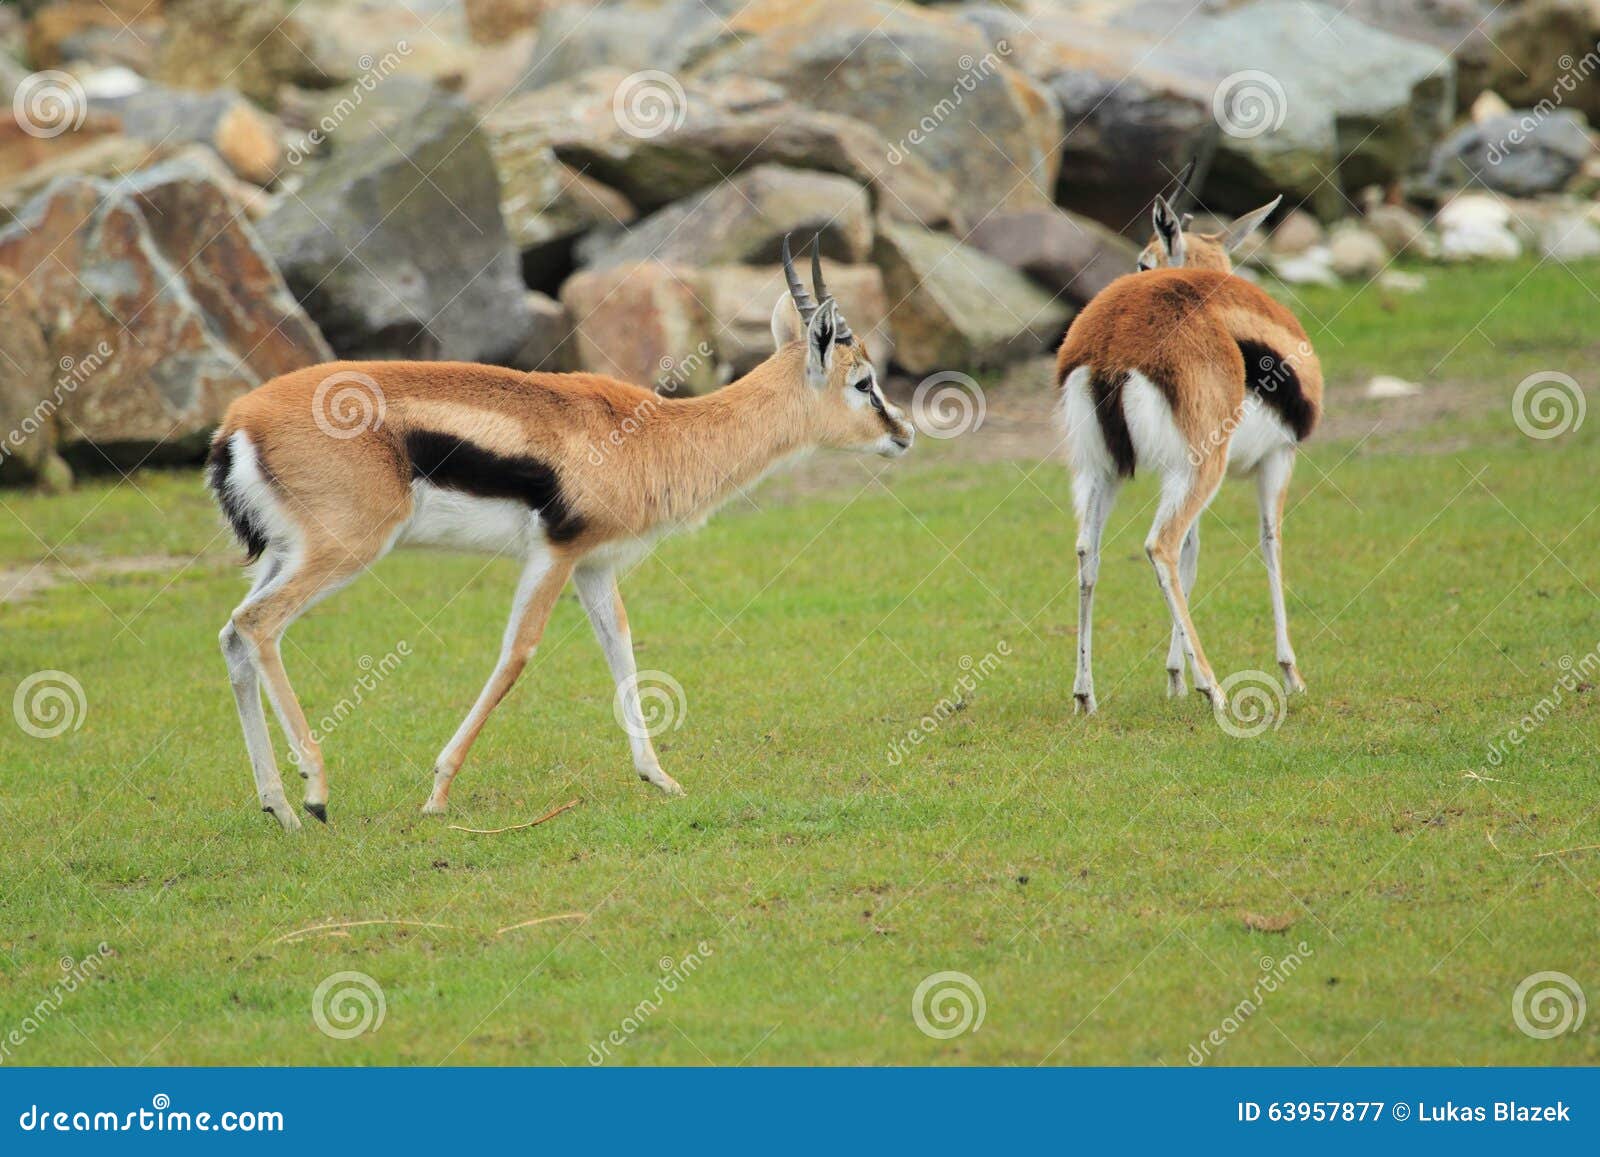 couple of thomson gazelles